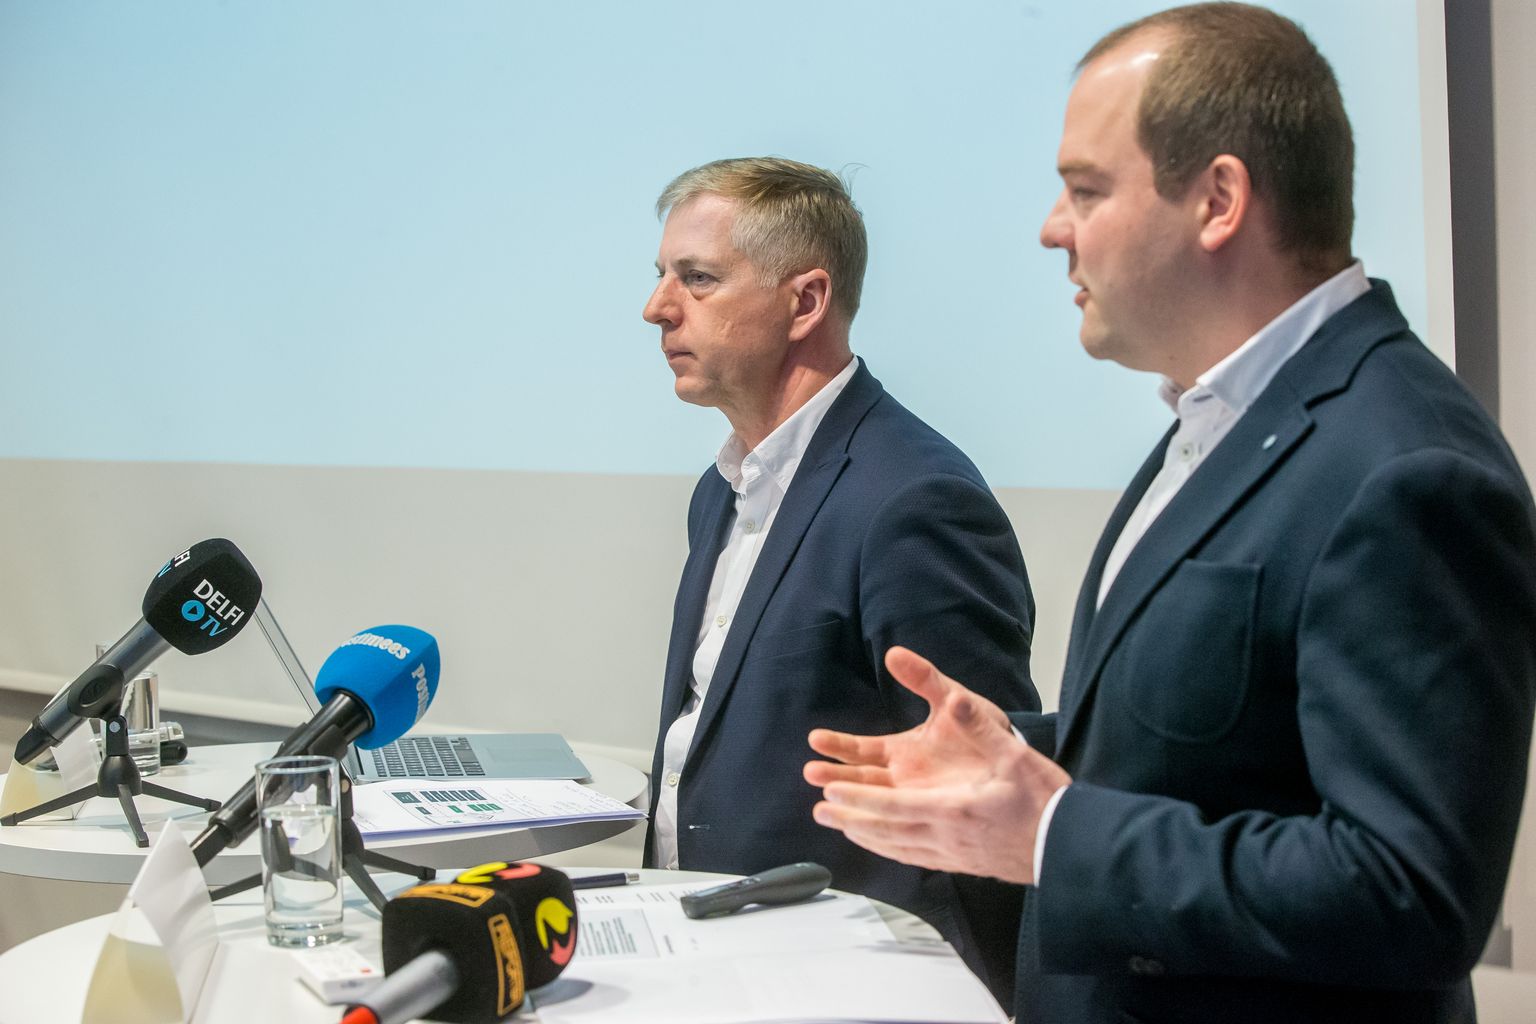 Ettevõtjad Margus Kohava (vasakul) ja Aadu Polli tutvustasid
Est-For Invest OÜ plaani ehitada Eestisse miljard eurot maksma minev tselluloositehas esmakordselt 10. jaanuaril 2017. aastal. Nüüd kipuvad nende lennukad plaanid luhtuma.